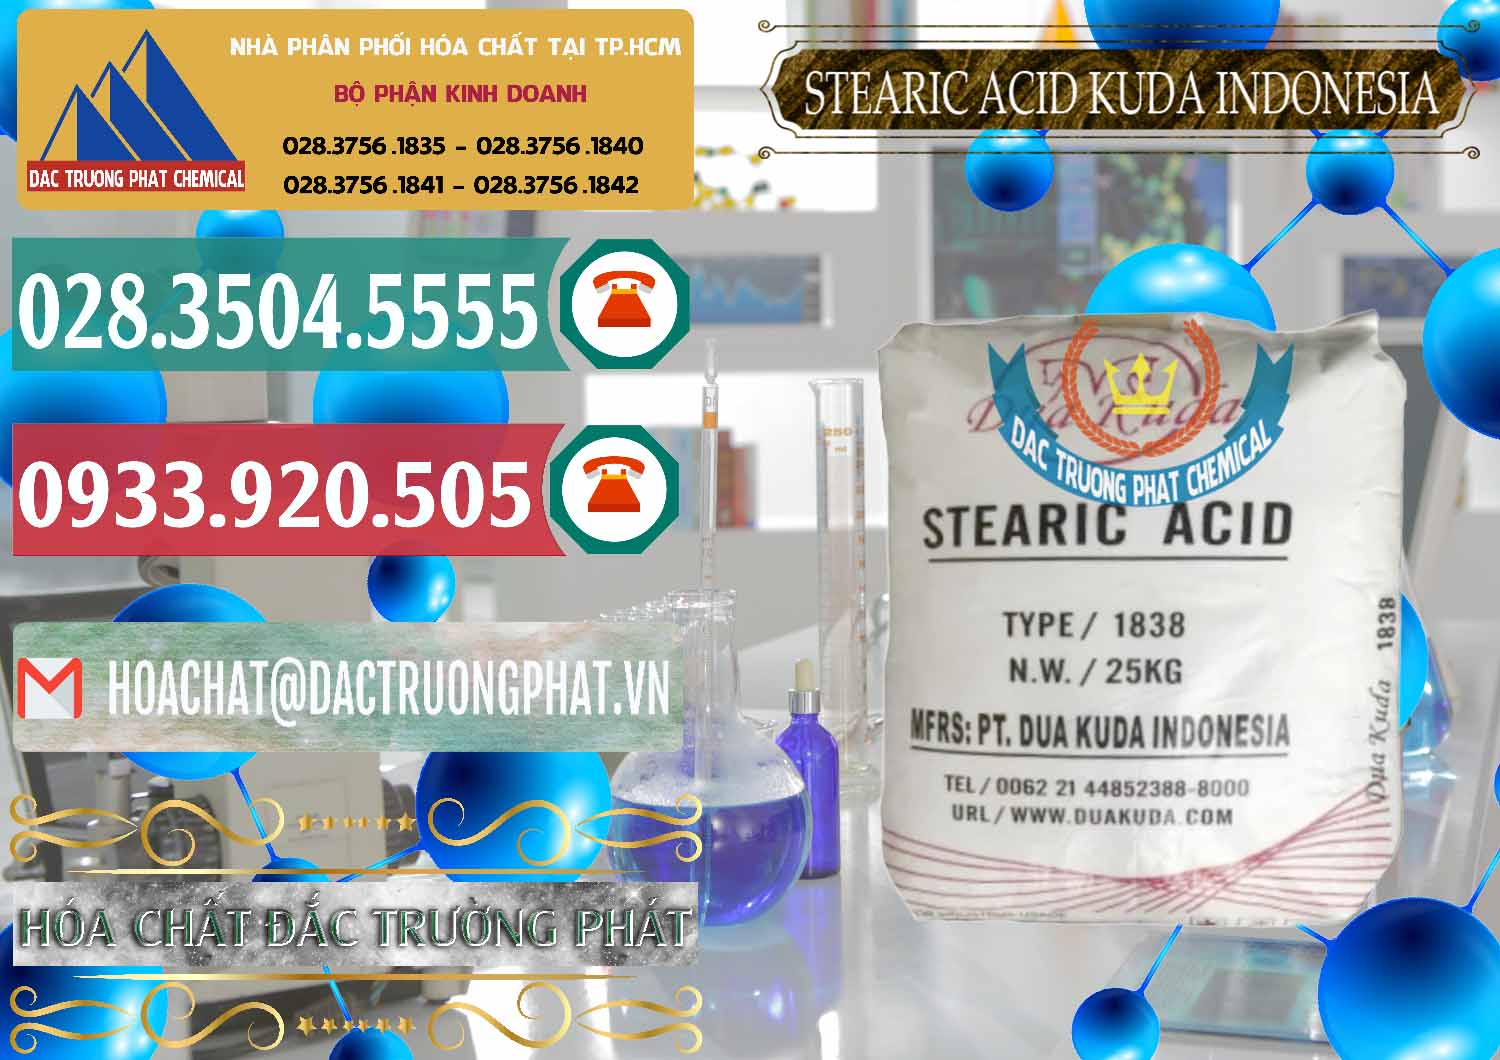 Kinh doanh và bán Axit Stearic - Stearic Acid Dua Kuda Indonesia - 0388 - Chuyên kinh doanh _ phân phối hóa chất tại TP.HCM - muabanhoachat.vn